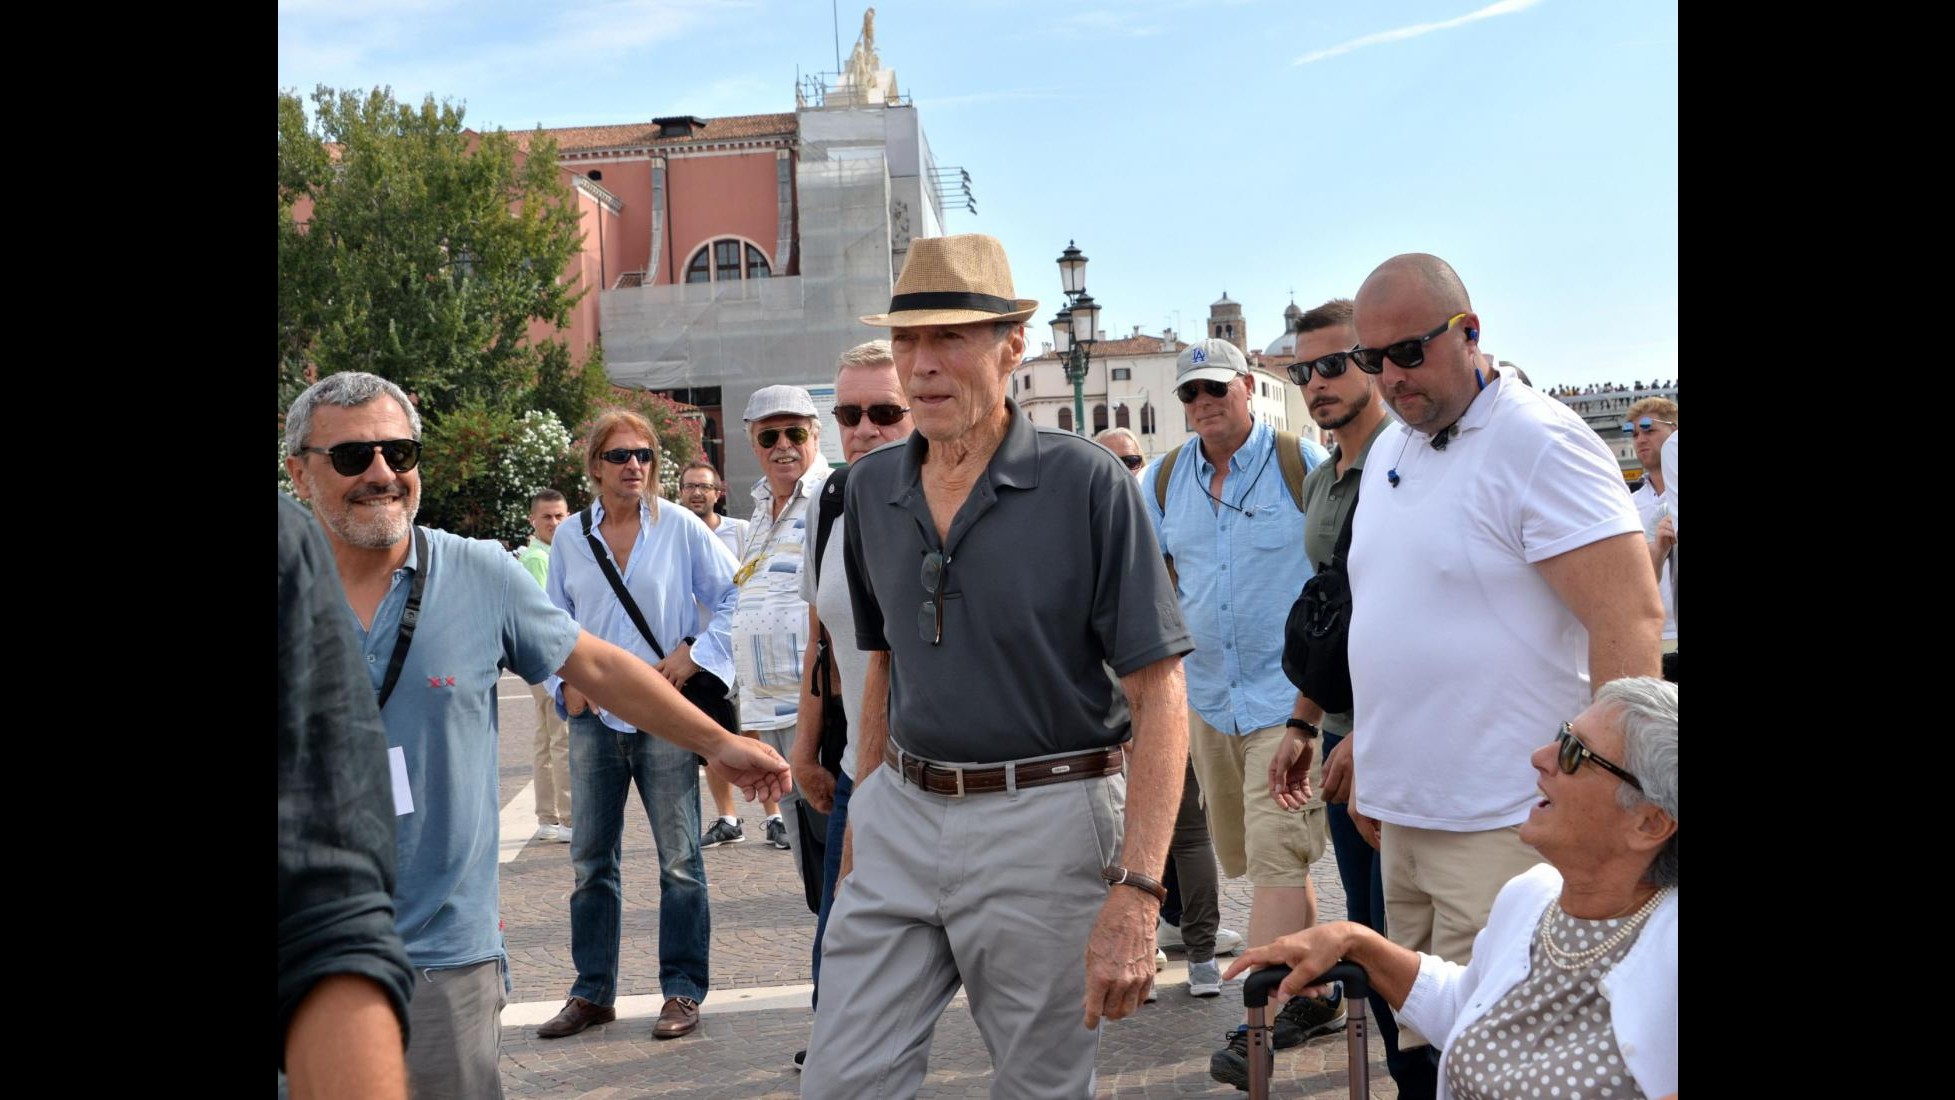 Nuovo film per Clint Eastwood: il primo ciak è a Venezia